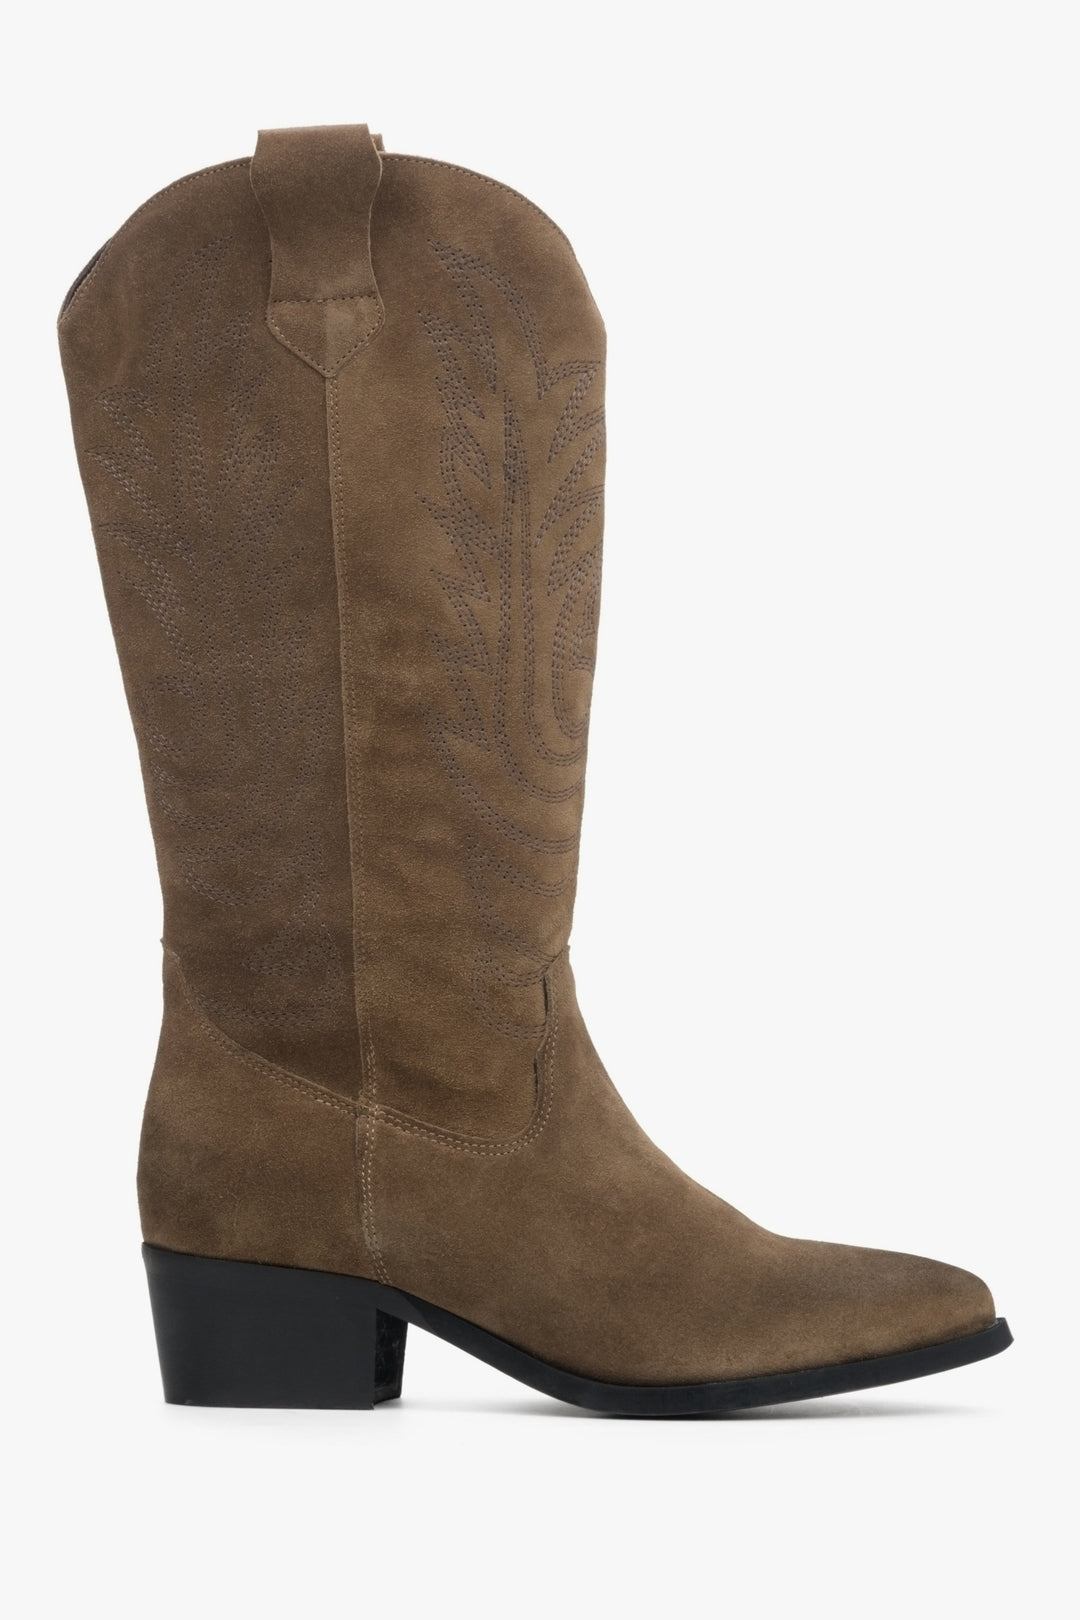 Estro brown suede cowboy boots - boot profile.